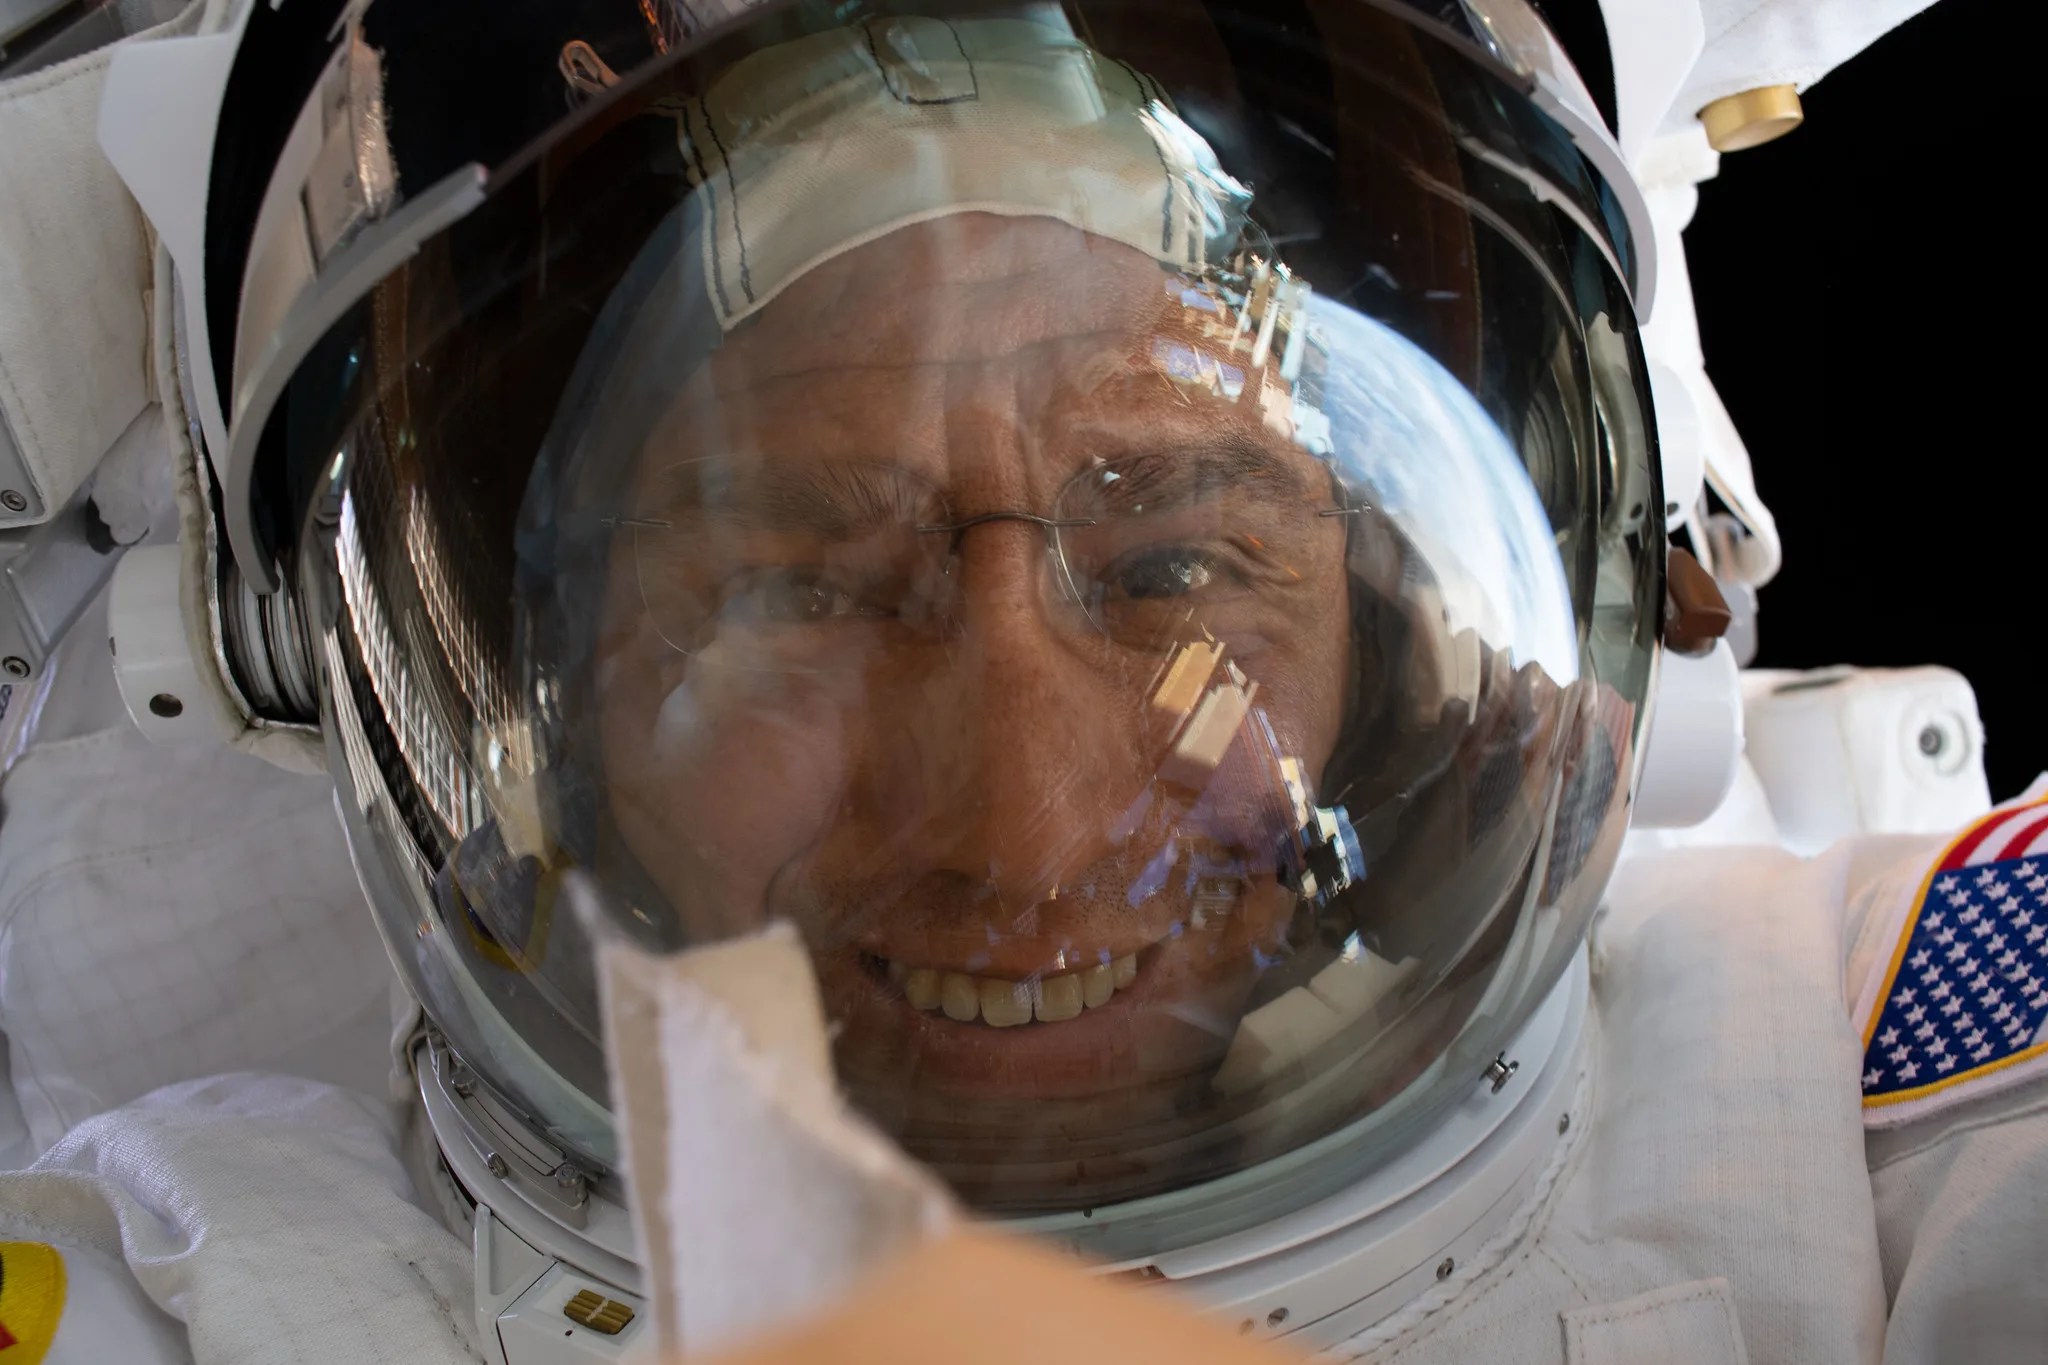 El astronauta de la NASA e ingeniero de vuelo de la Expedición 68, Frank Rubio, apunta su cámara hacia sí mismo y se hace un "selfie espacial" fuera de este mundo con la pantalla reflectante de su casco levantada durante una caminata espacial en su Unidad de Movilidad Extravehicular, o traje espacial.